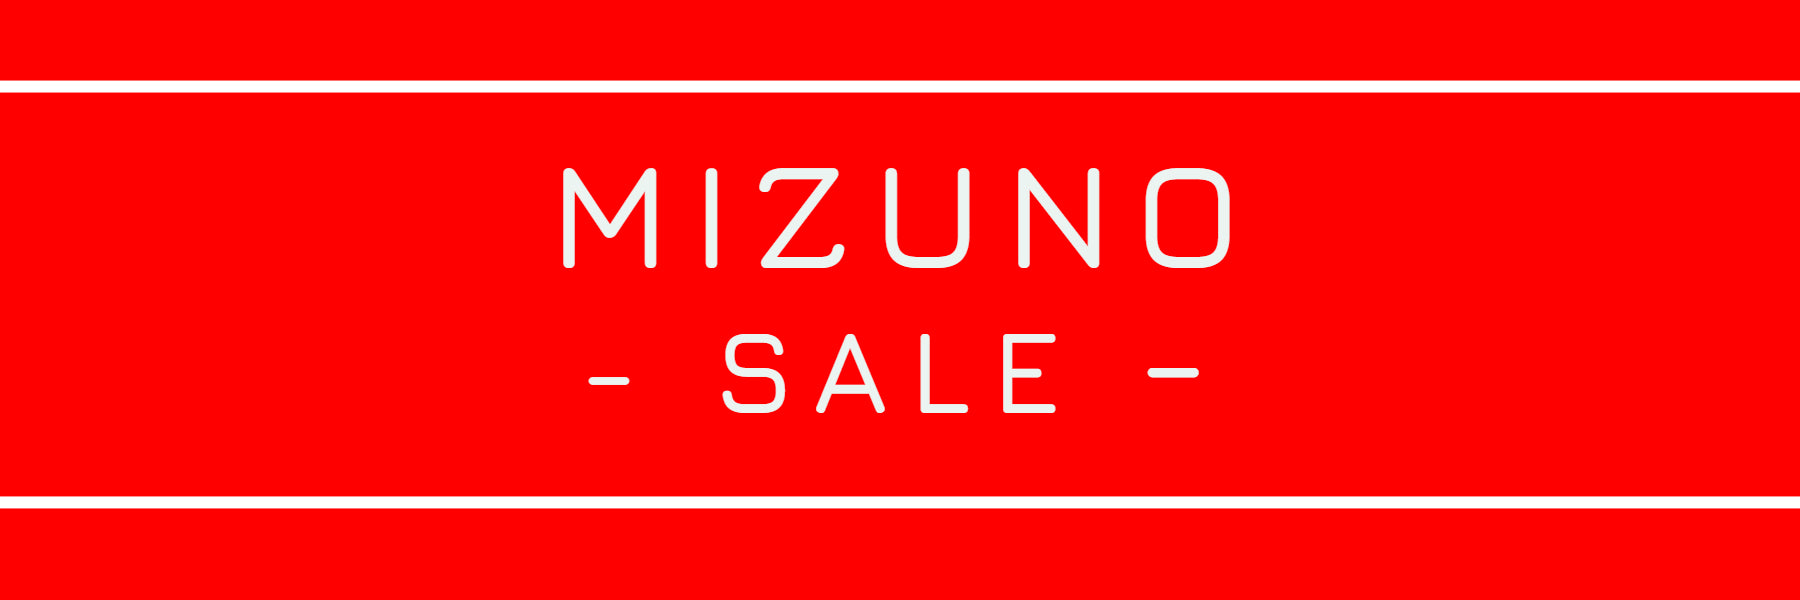 Mizuno-Sale